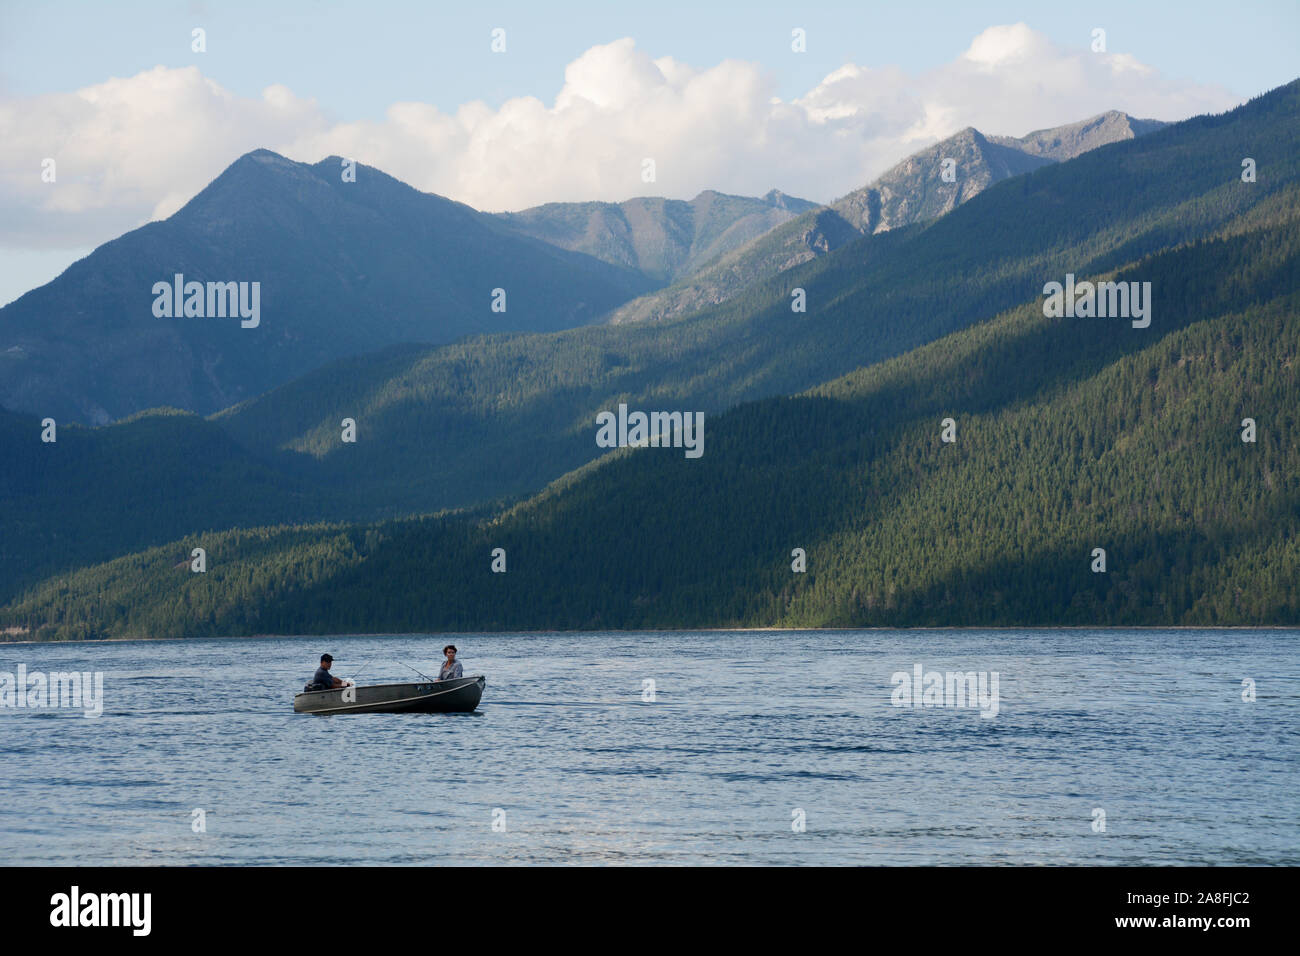 Deux personnes dans un bateau à moteur dans la région de Kootenay Lake, avec les montagnes de la Purcell Wilderness Conservancy en arrière-plan, en Colombie-Britannique, Canada. Banque D'Images